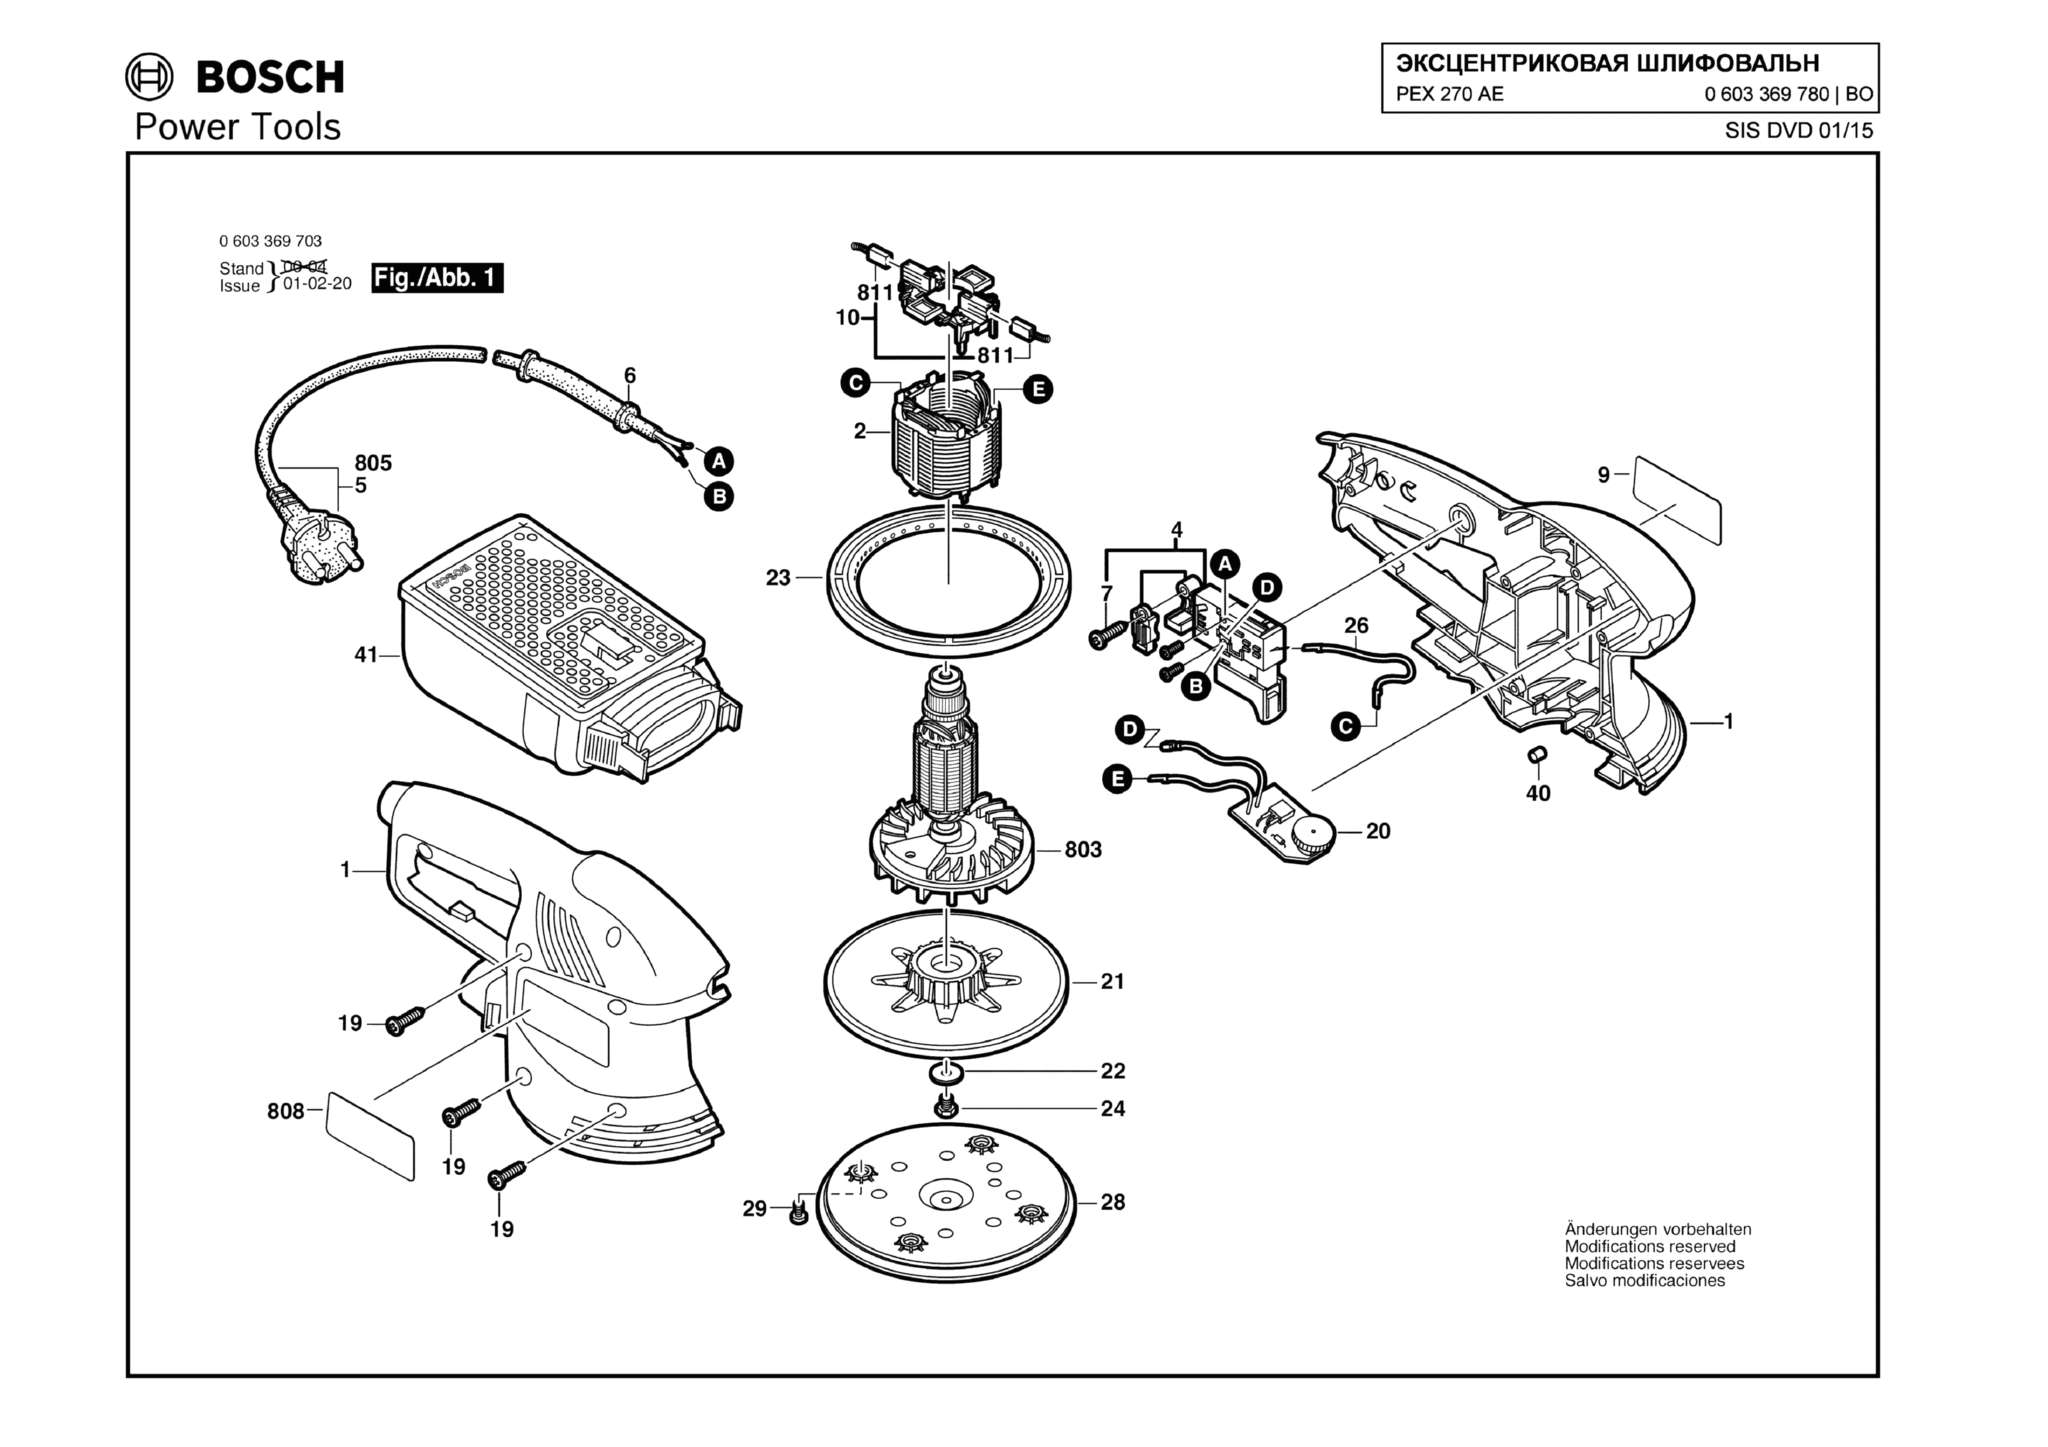 Запчасти, схема и деталировка Bosch PEX 270 AE (ТИП 0603369780)